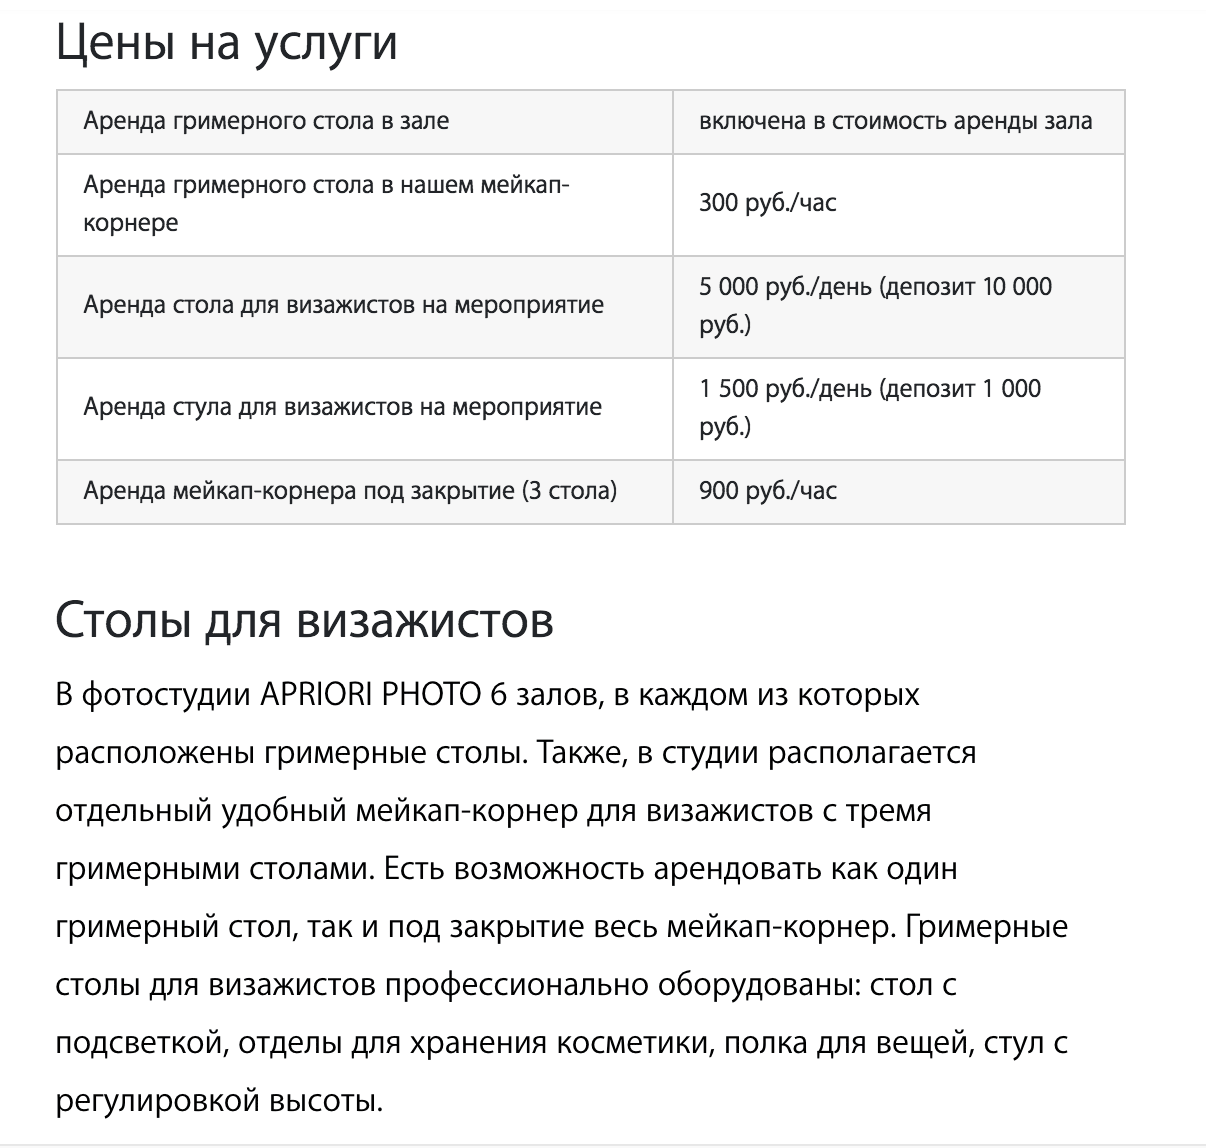 Цены на аренду мейкап-корнера в московской фотостудии. Источник: apriori.photo